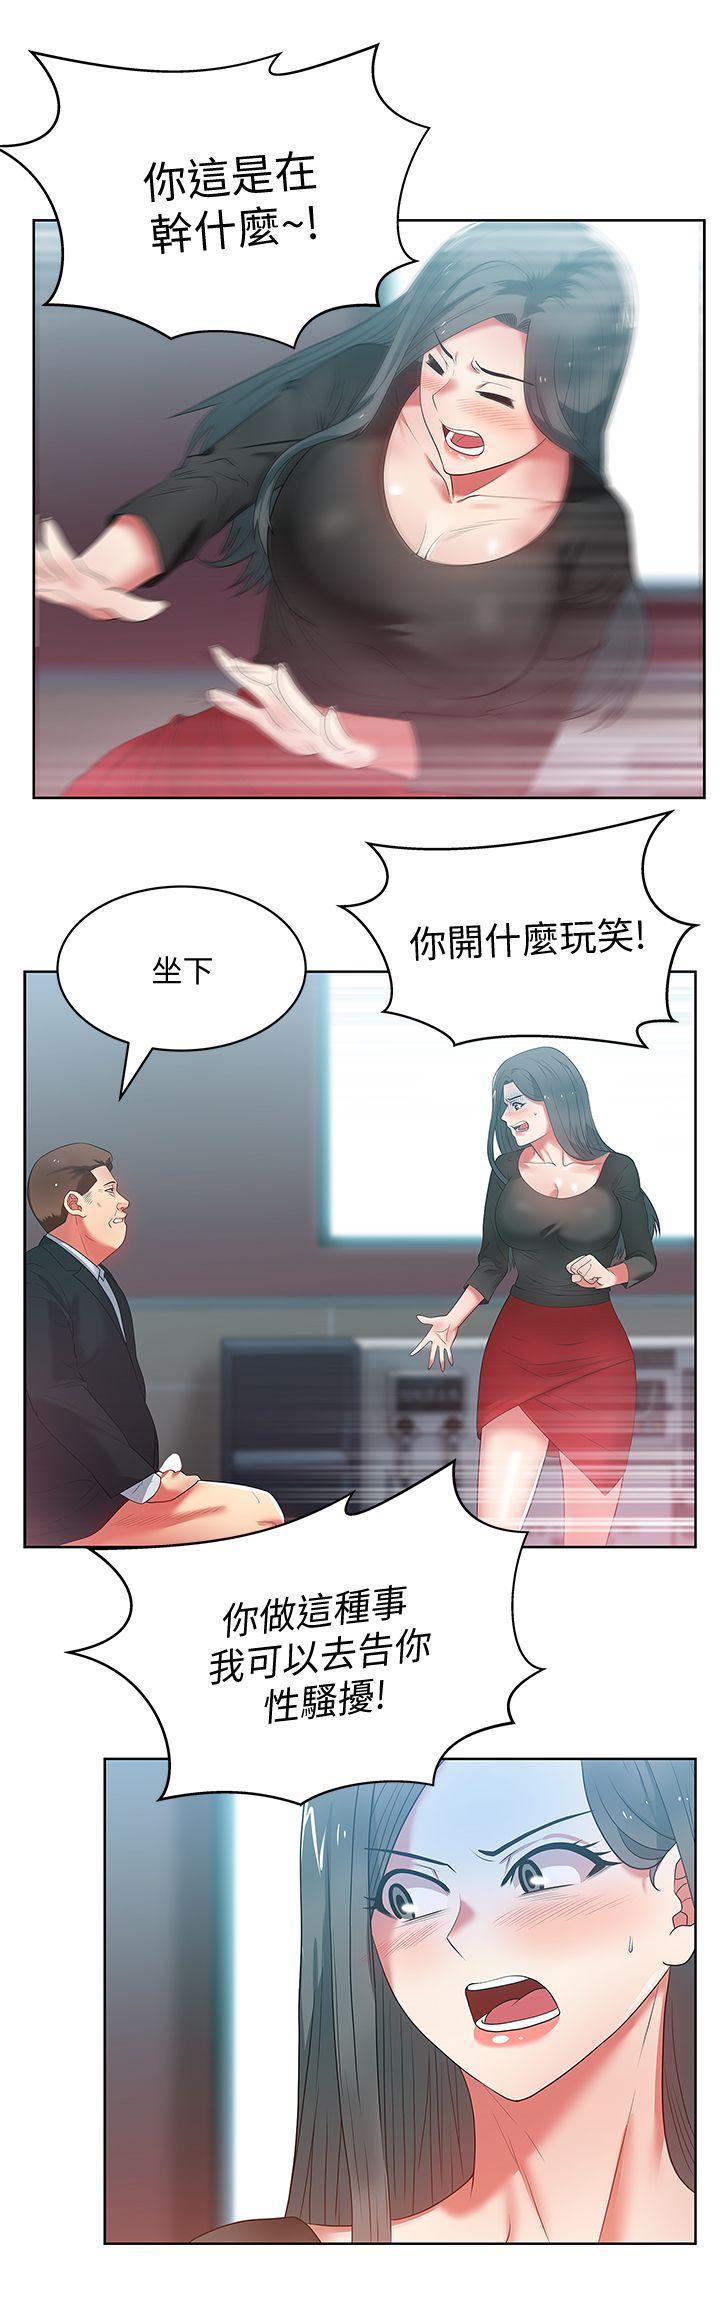 《老婆的闺蜜》漫画 第14话 - 空降部队朴珠希的秘密